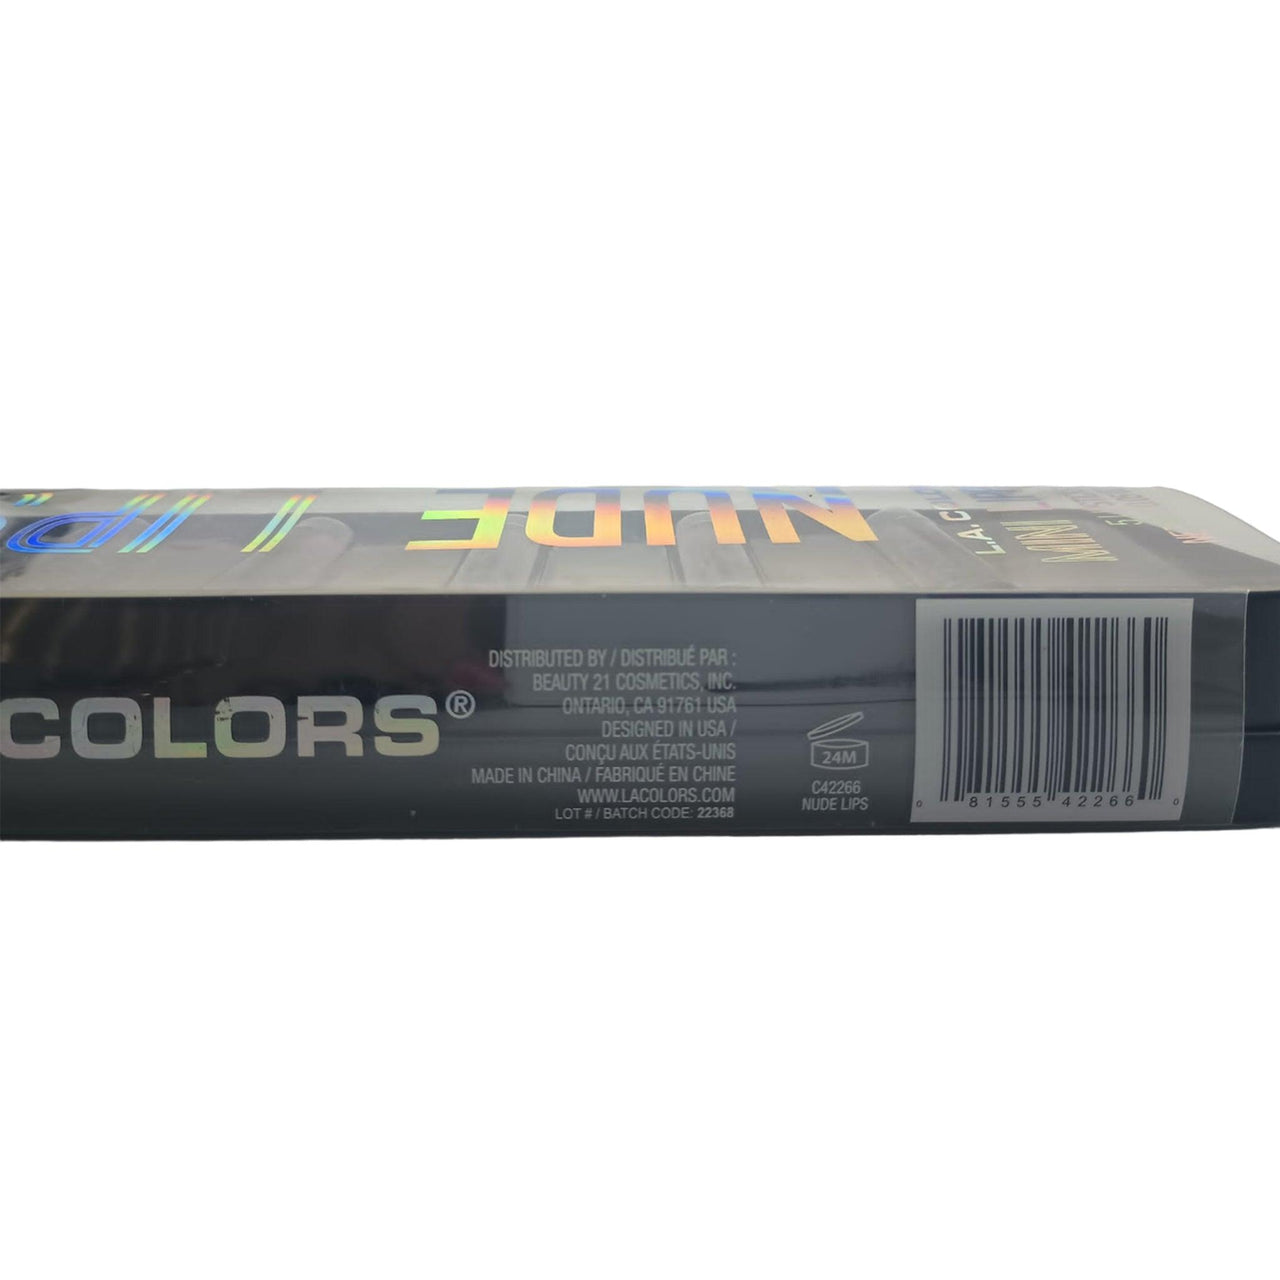 L.A. Colors 5 Nude Mini Lippies (50 Pcs Box) - Discount Wholesalers Inc